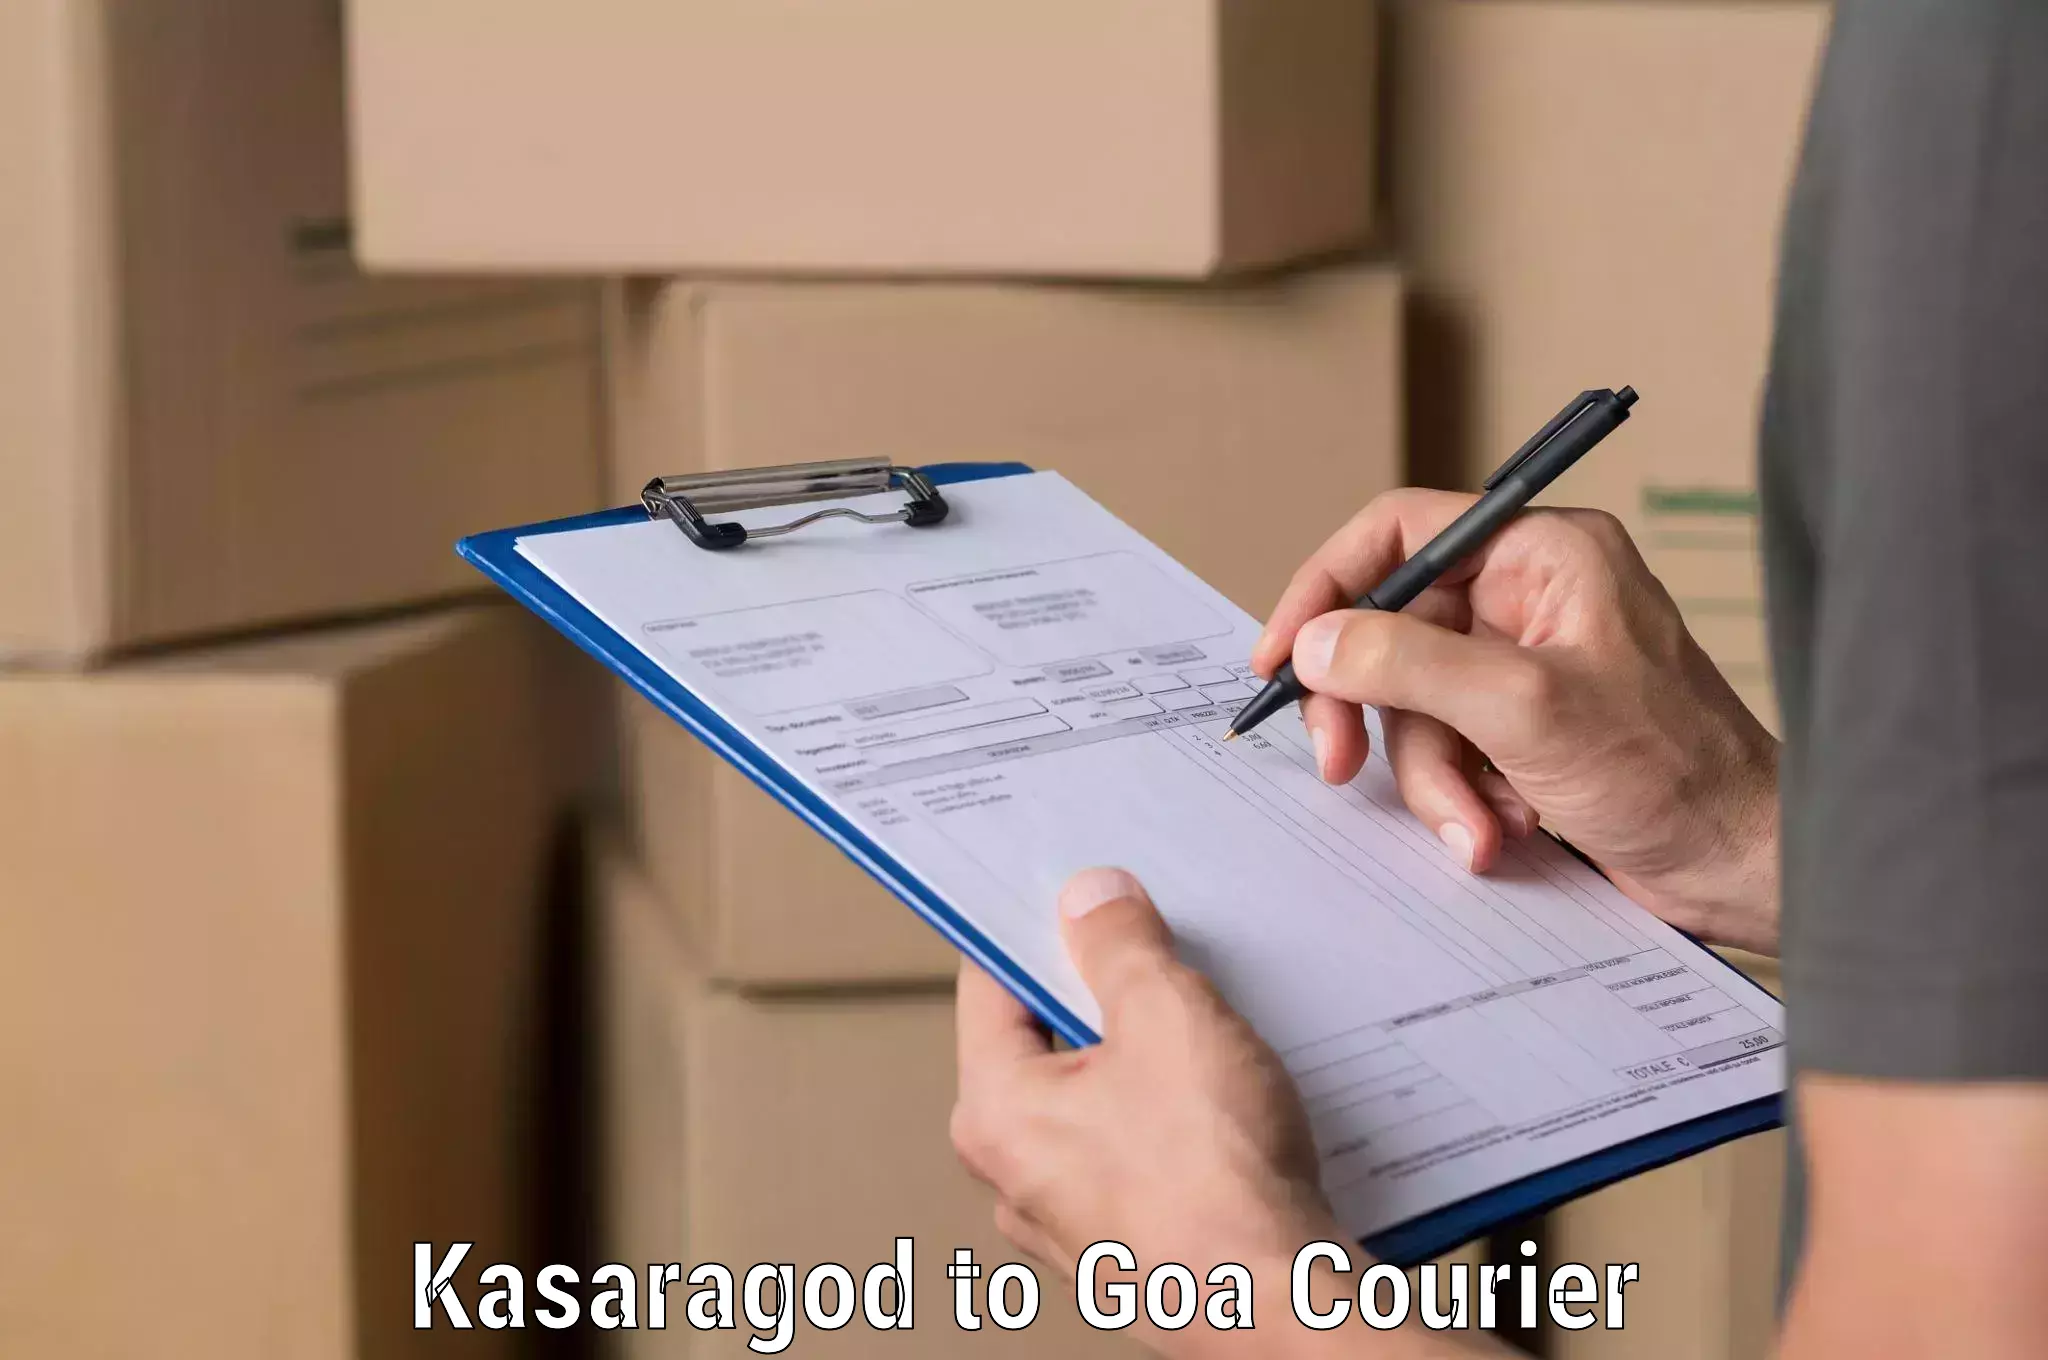 Cash on delivery service Kasaragod to Ponda